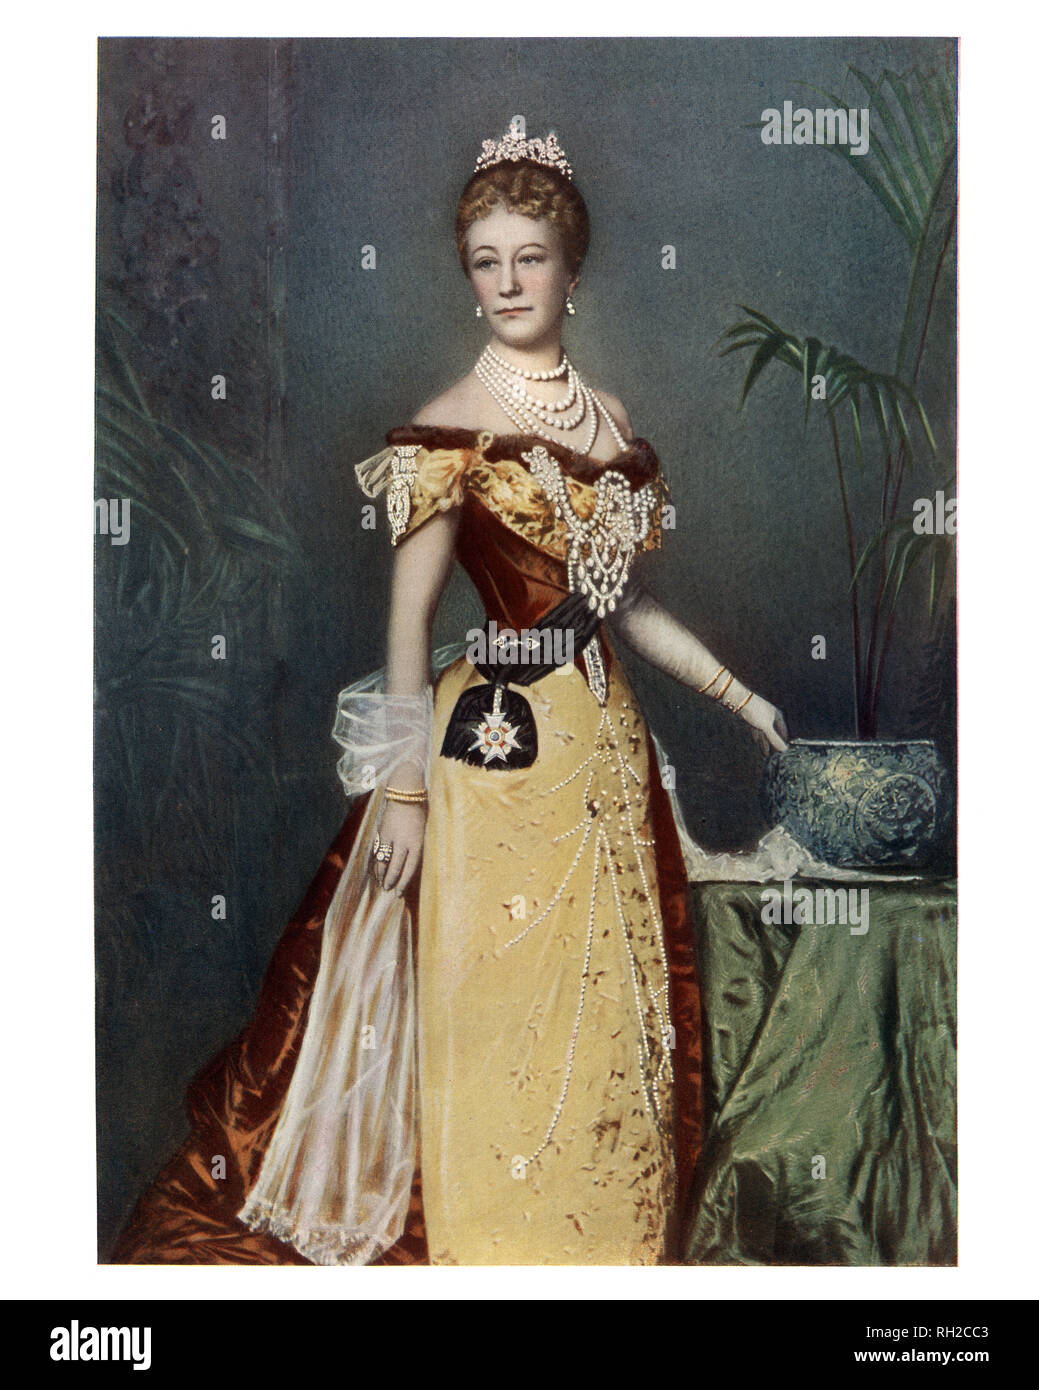 Augusta Victoria de Schleswig-Holstein, impératrice allemande, la dernière impératrice allemande et reine de Prusse par mariage à Guillaume II, Empereur allemand. Banque D'Images